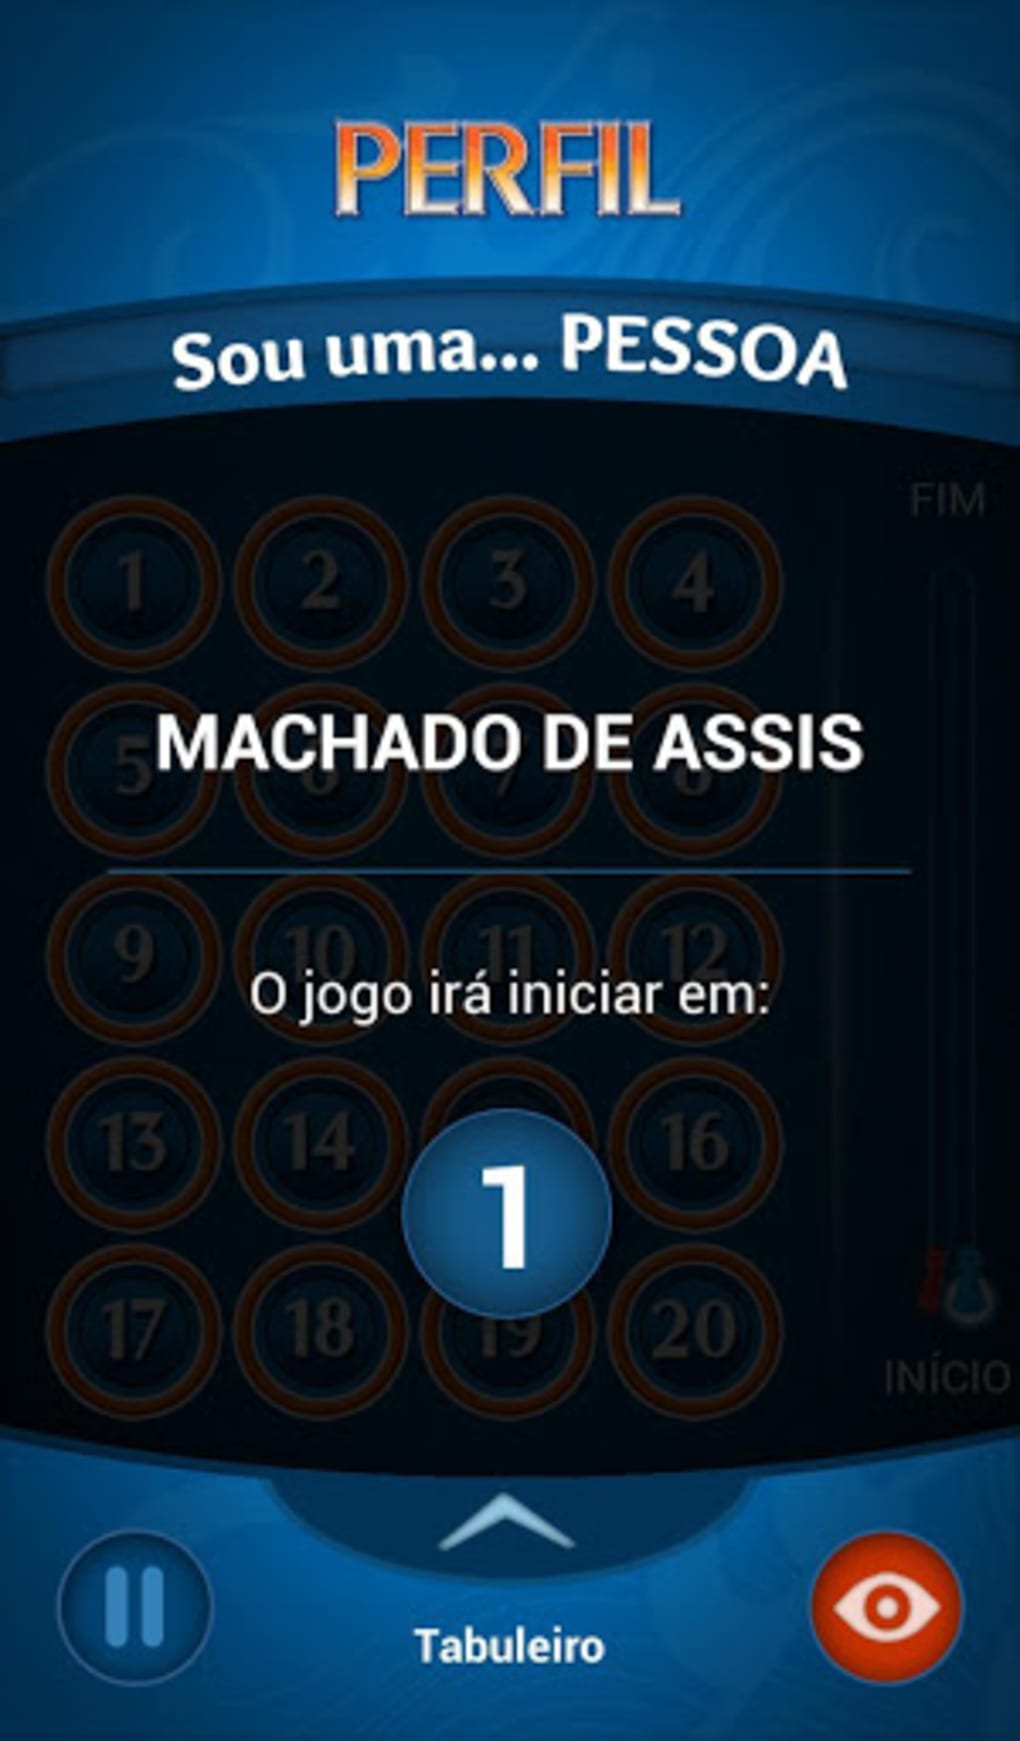 Jogo de Damas - Dicas APK for Android Download